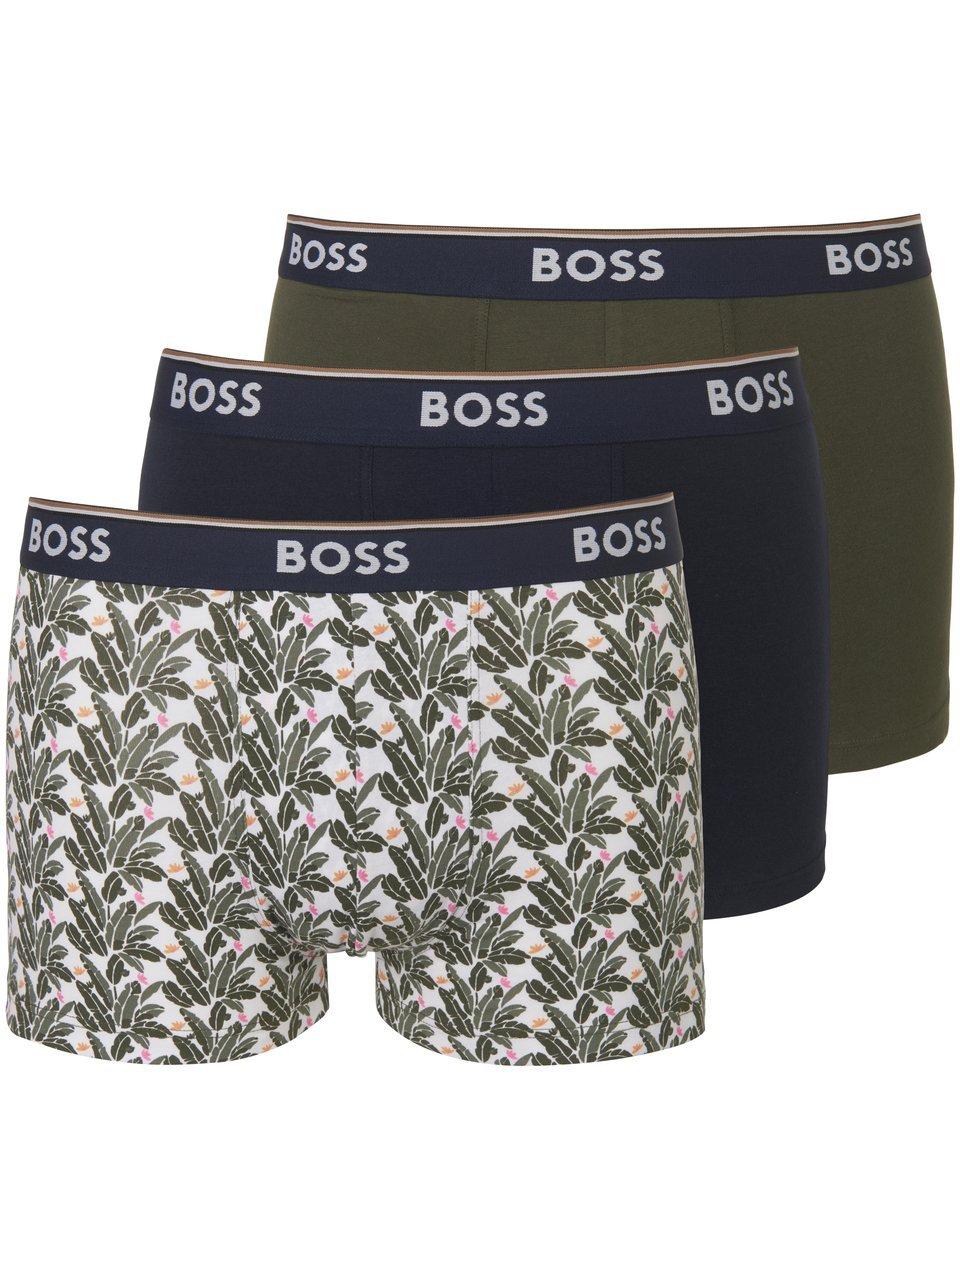 Hugo Boss BOSS power 3P boxer trunks leafs multi - L